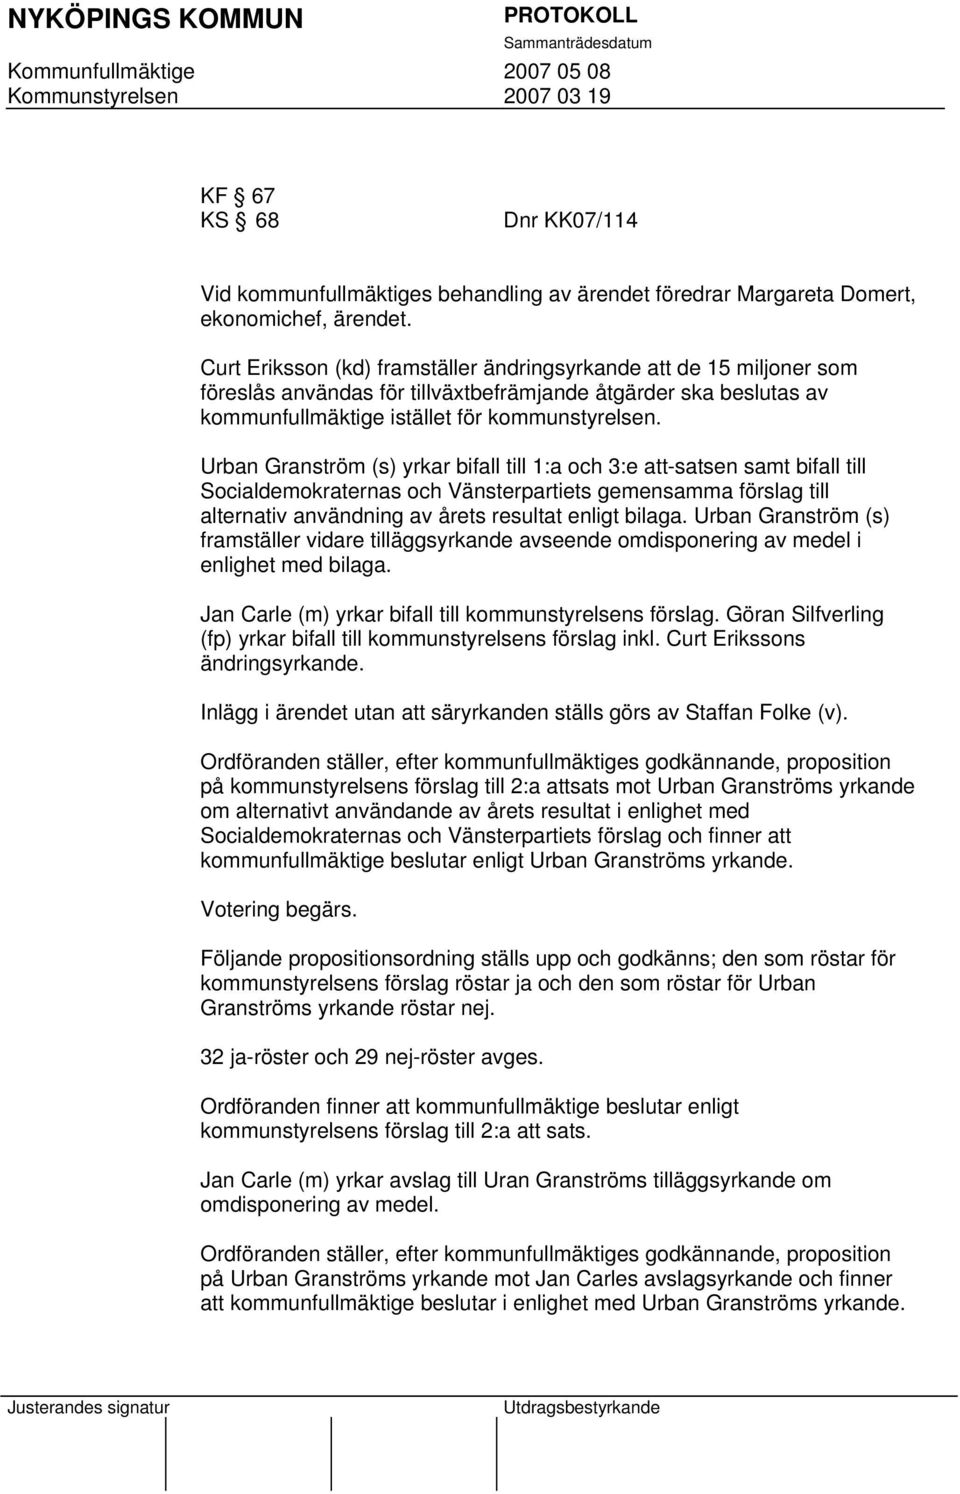 Urban Granström (s) yrkar bifall till 1:a och 3:e att-satsen samt bifall till Socialdemokraternas och Vänsterpartiets gemensamma förslag till alternativ användning av årets resultat enligt bilaga.